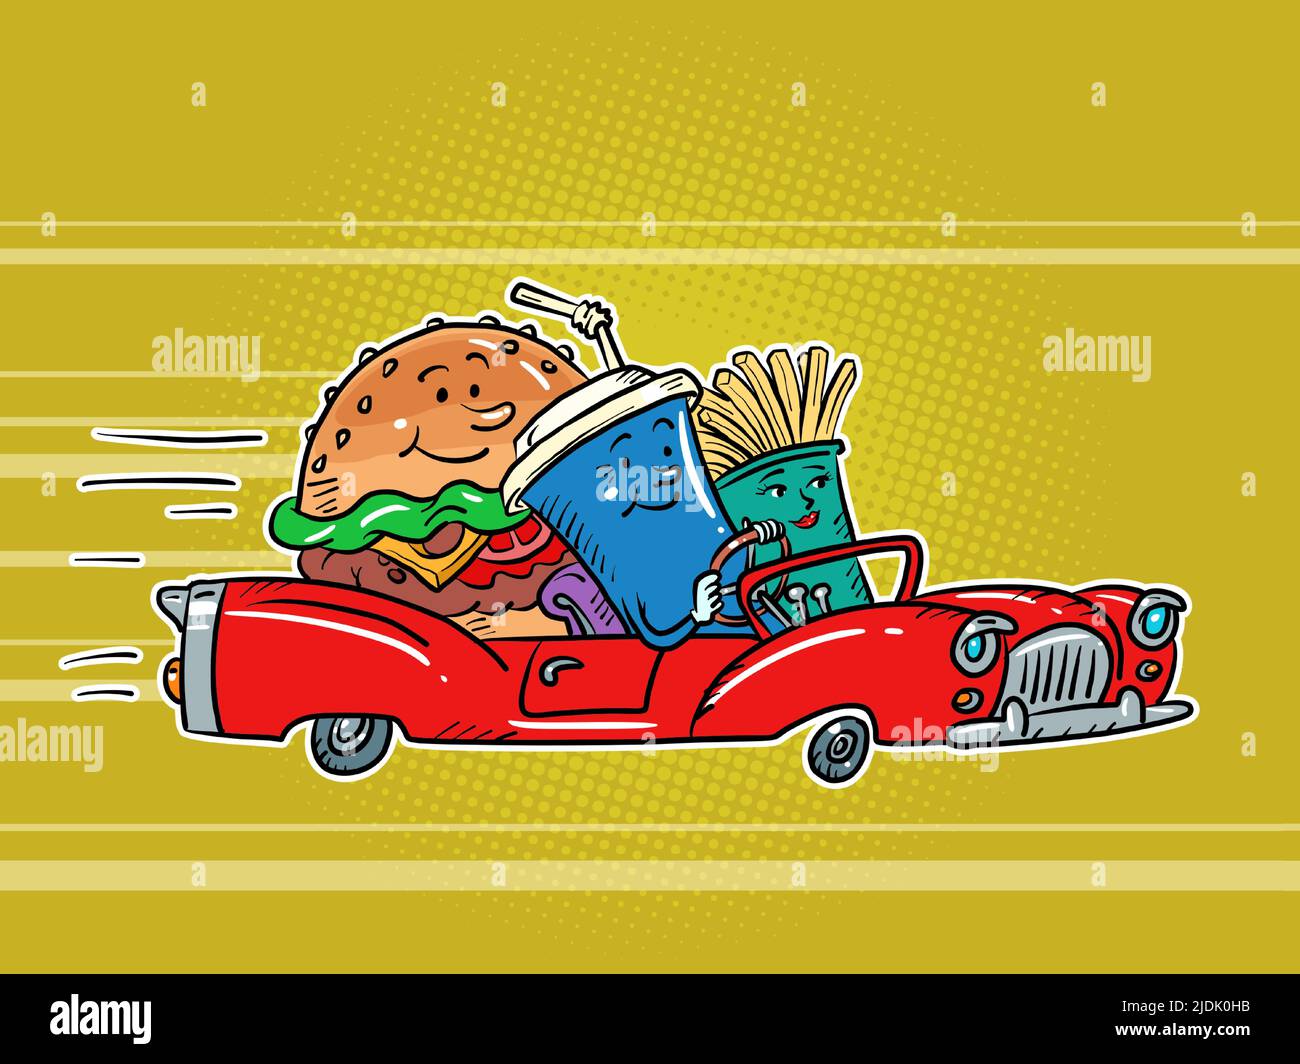 Restaurante de carretera, comida rápida personajes hamburguesa bebida cola y papas fritas amigos conduciendo coche Ilustración del Vector